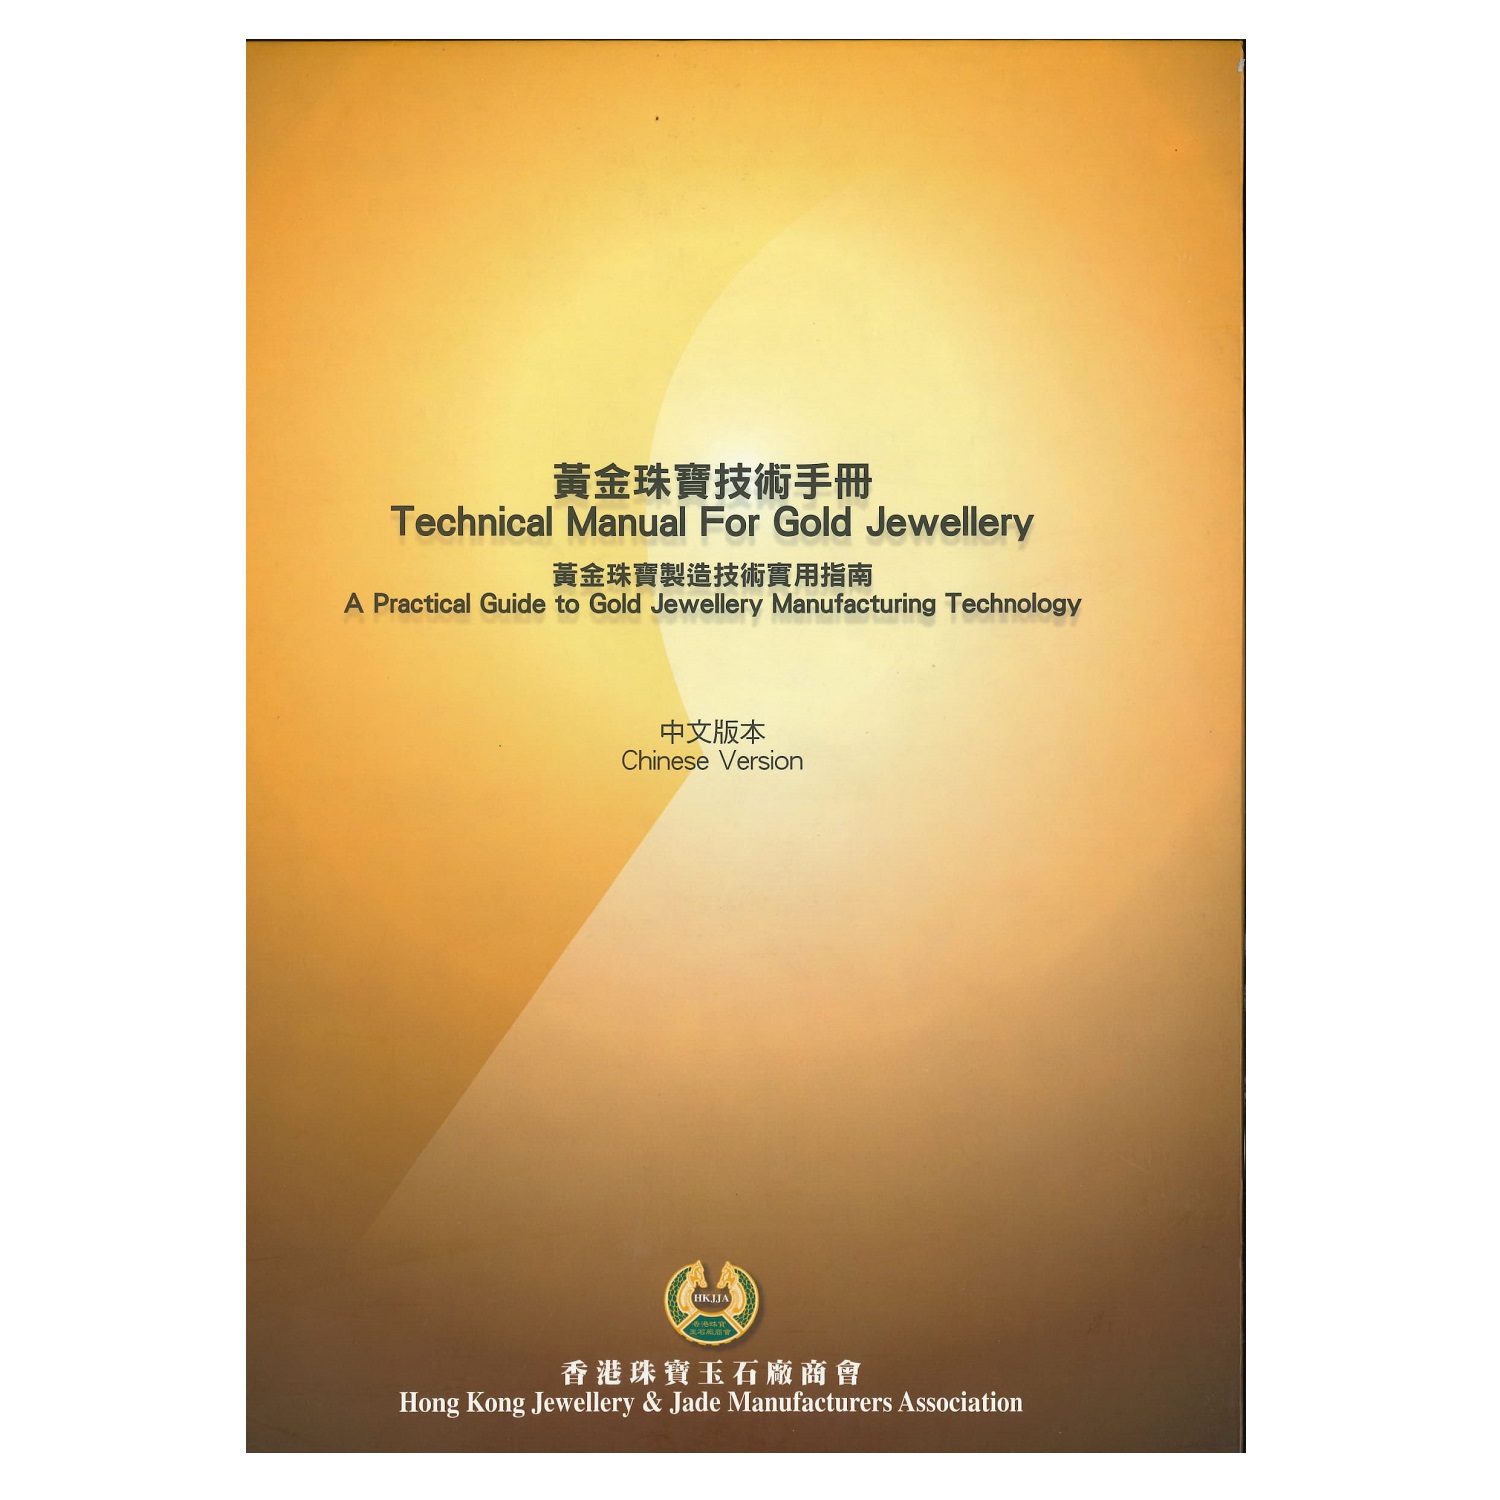 中文版《黃金珠寶技術手冊︰黃金珠寶製造技術實用指南》